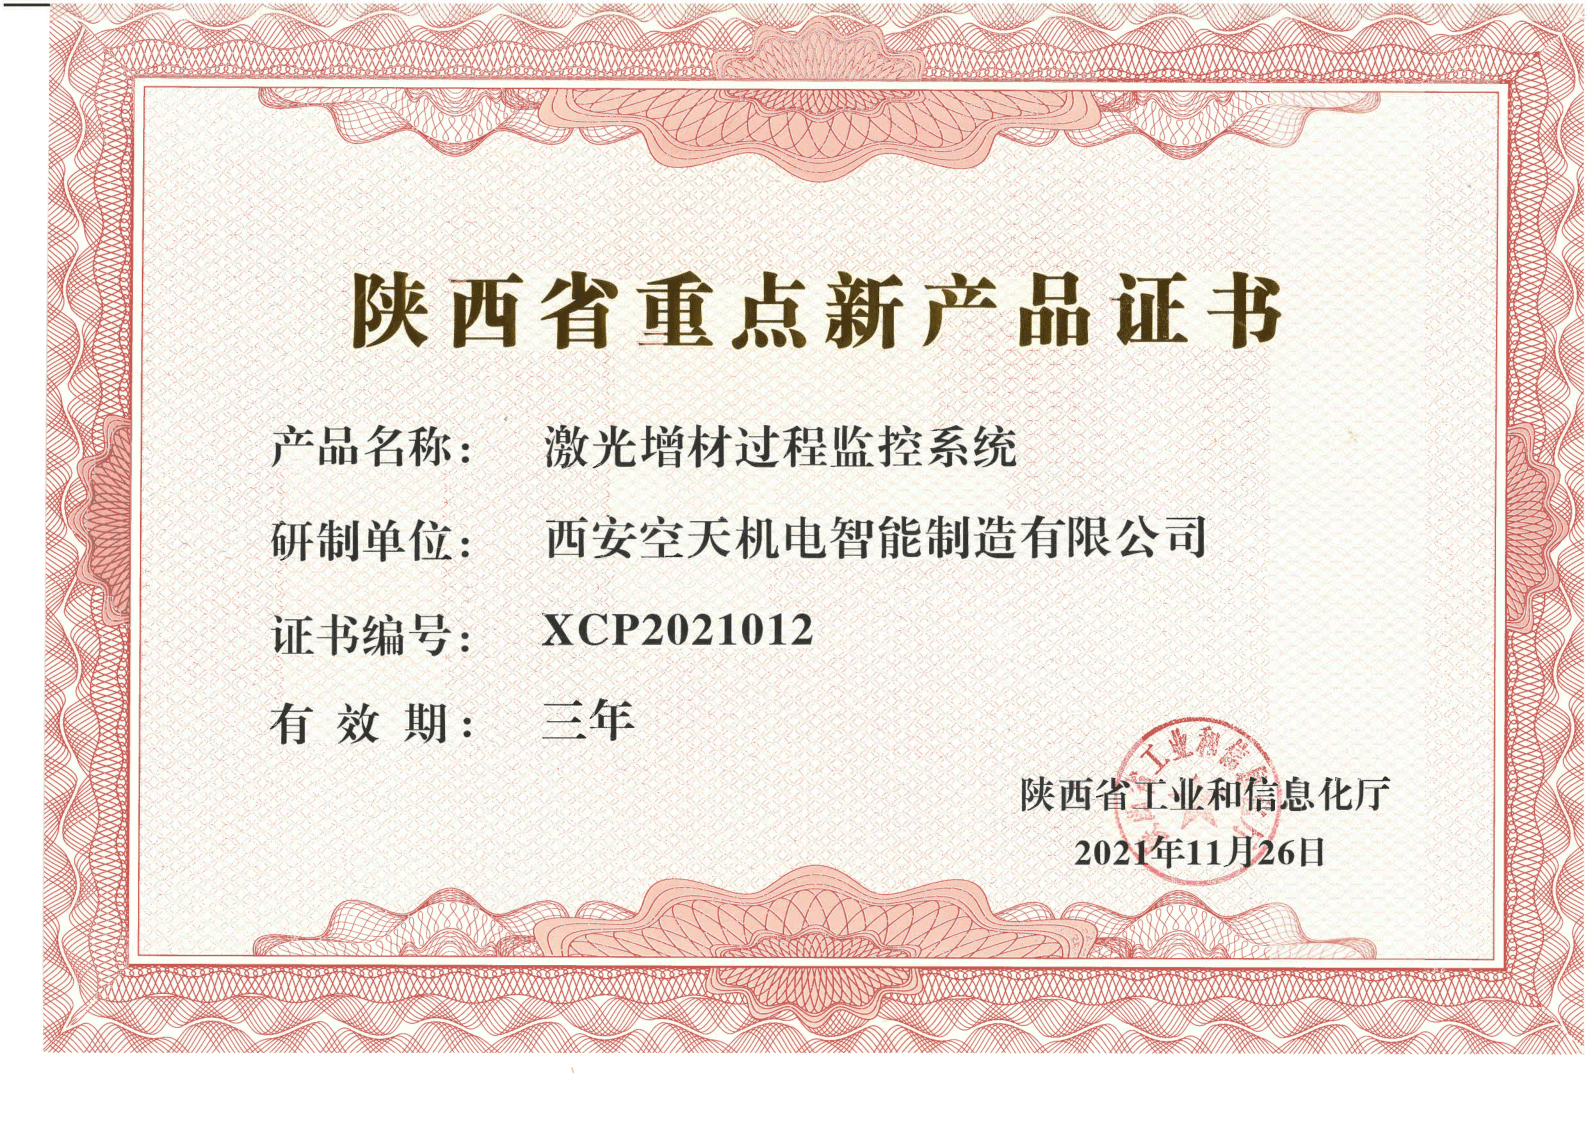 陕西省重点新产品证书（激光增材过程监控系统）_1.png